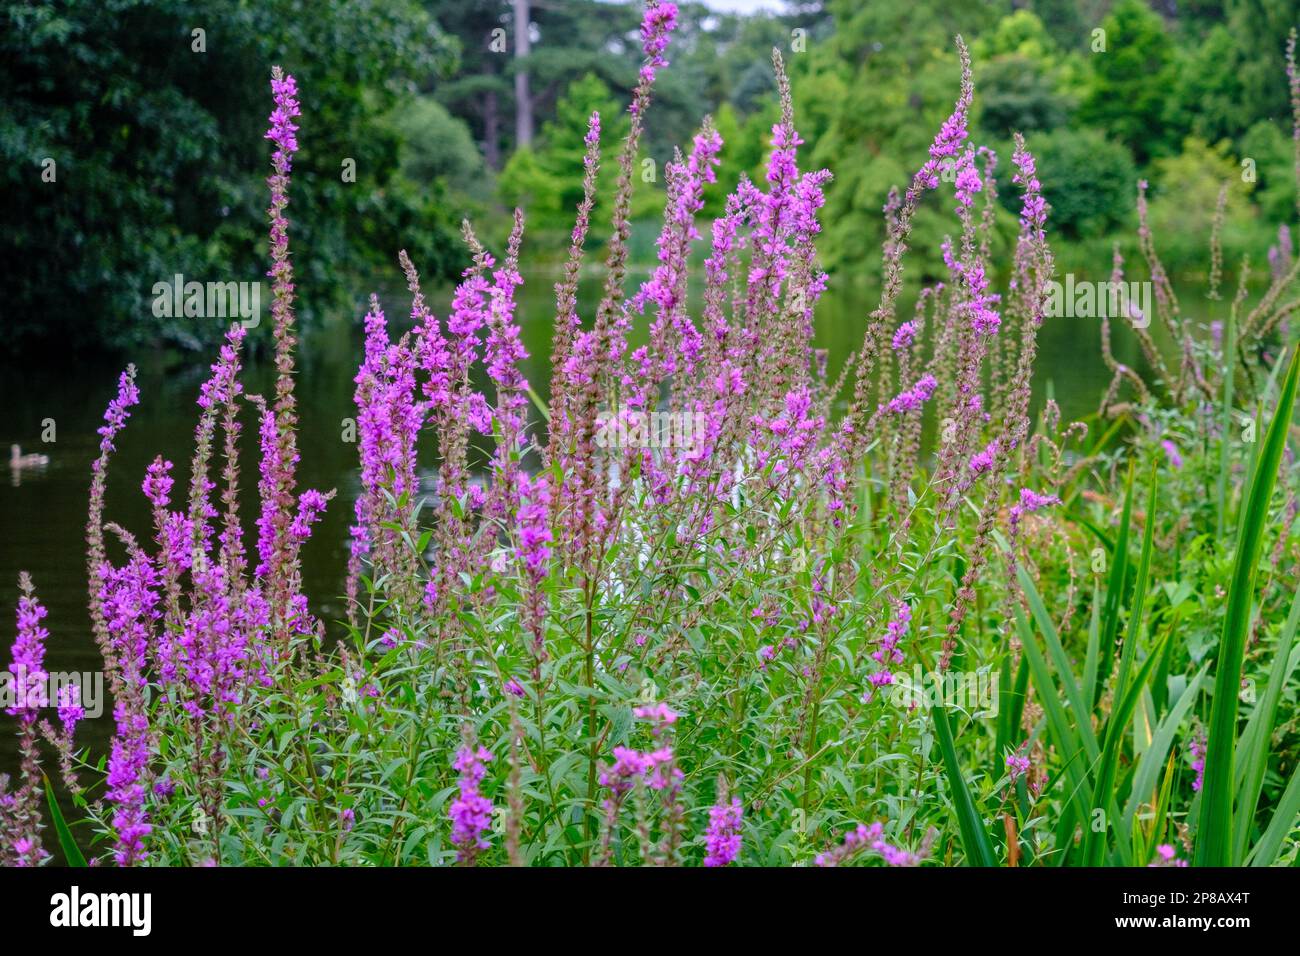 Primer plano de flores lisas de color púrpura, una herbácea resistente y perenne nativa de las Islas Británicas con el cielo y los árboles en el fondo. Foto de stock